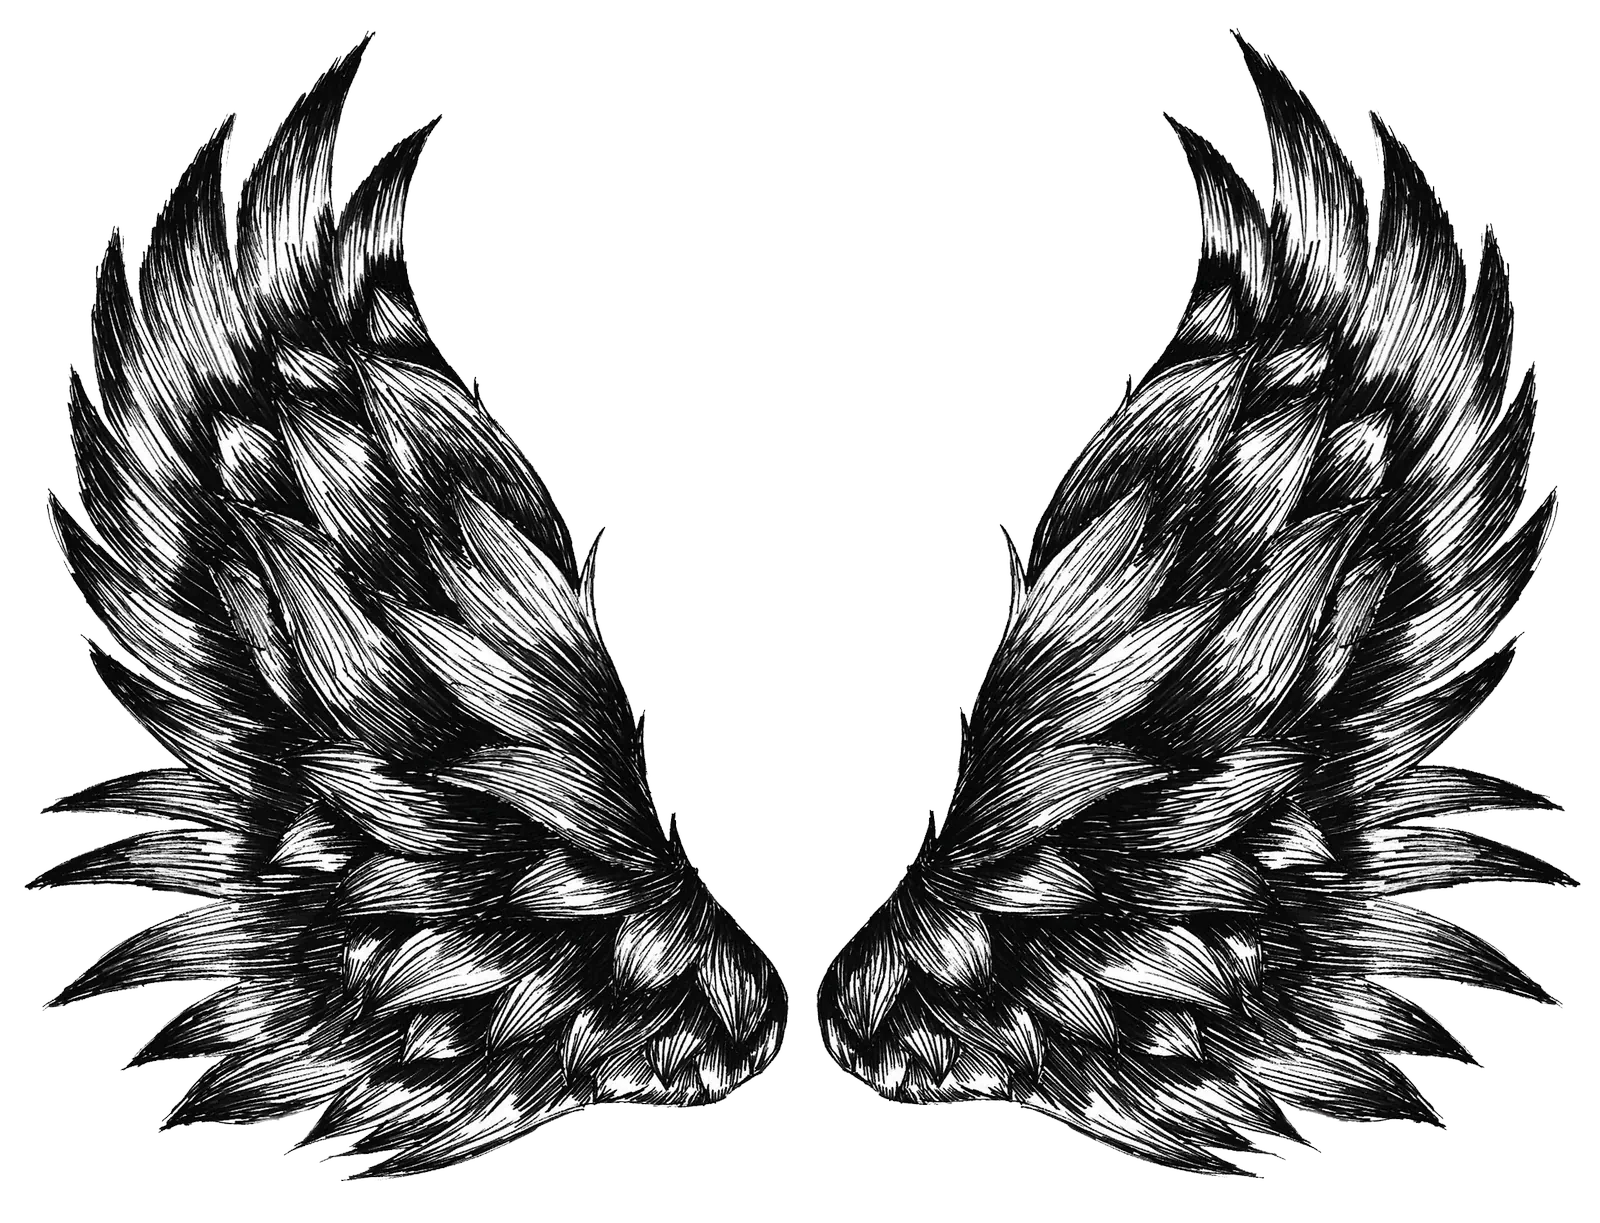 Wings Black